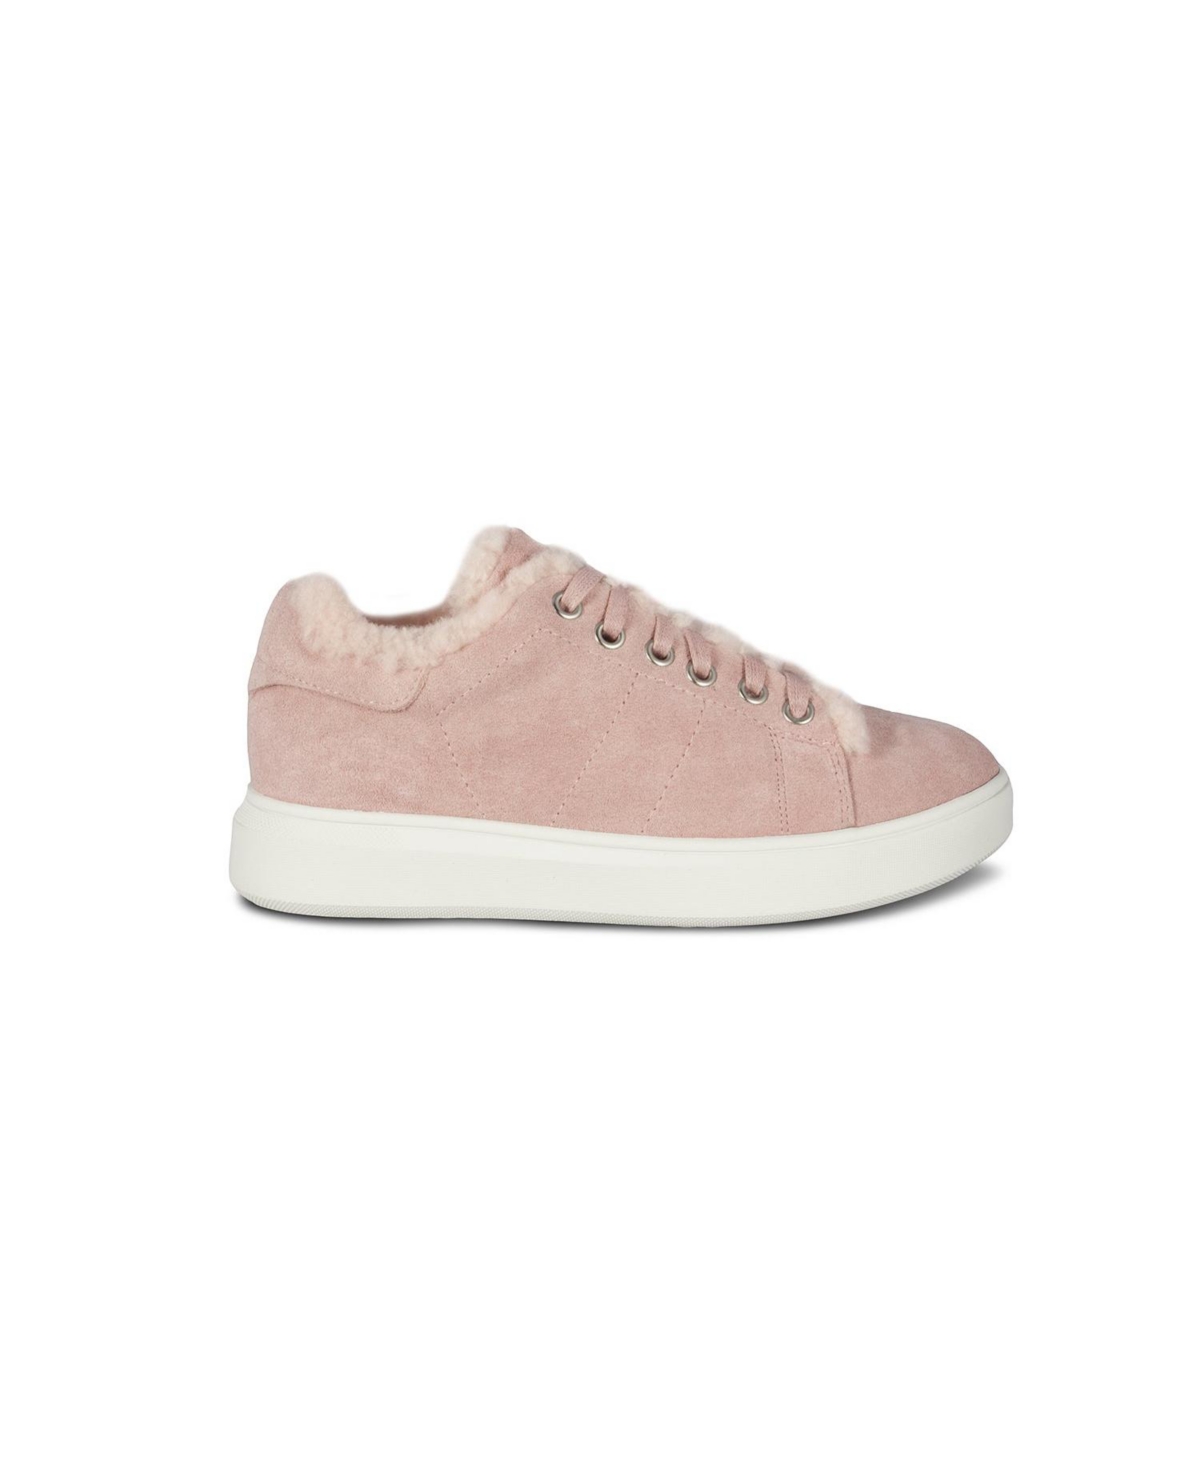 Ladies Holly Sneakers By Cloud Nine Sheepskin - Pink